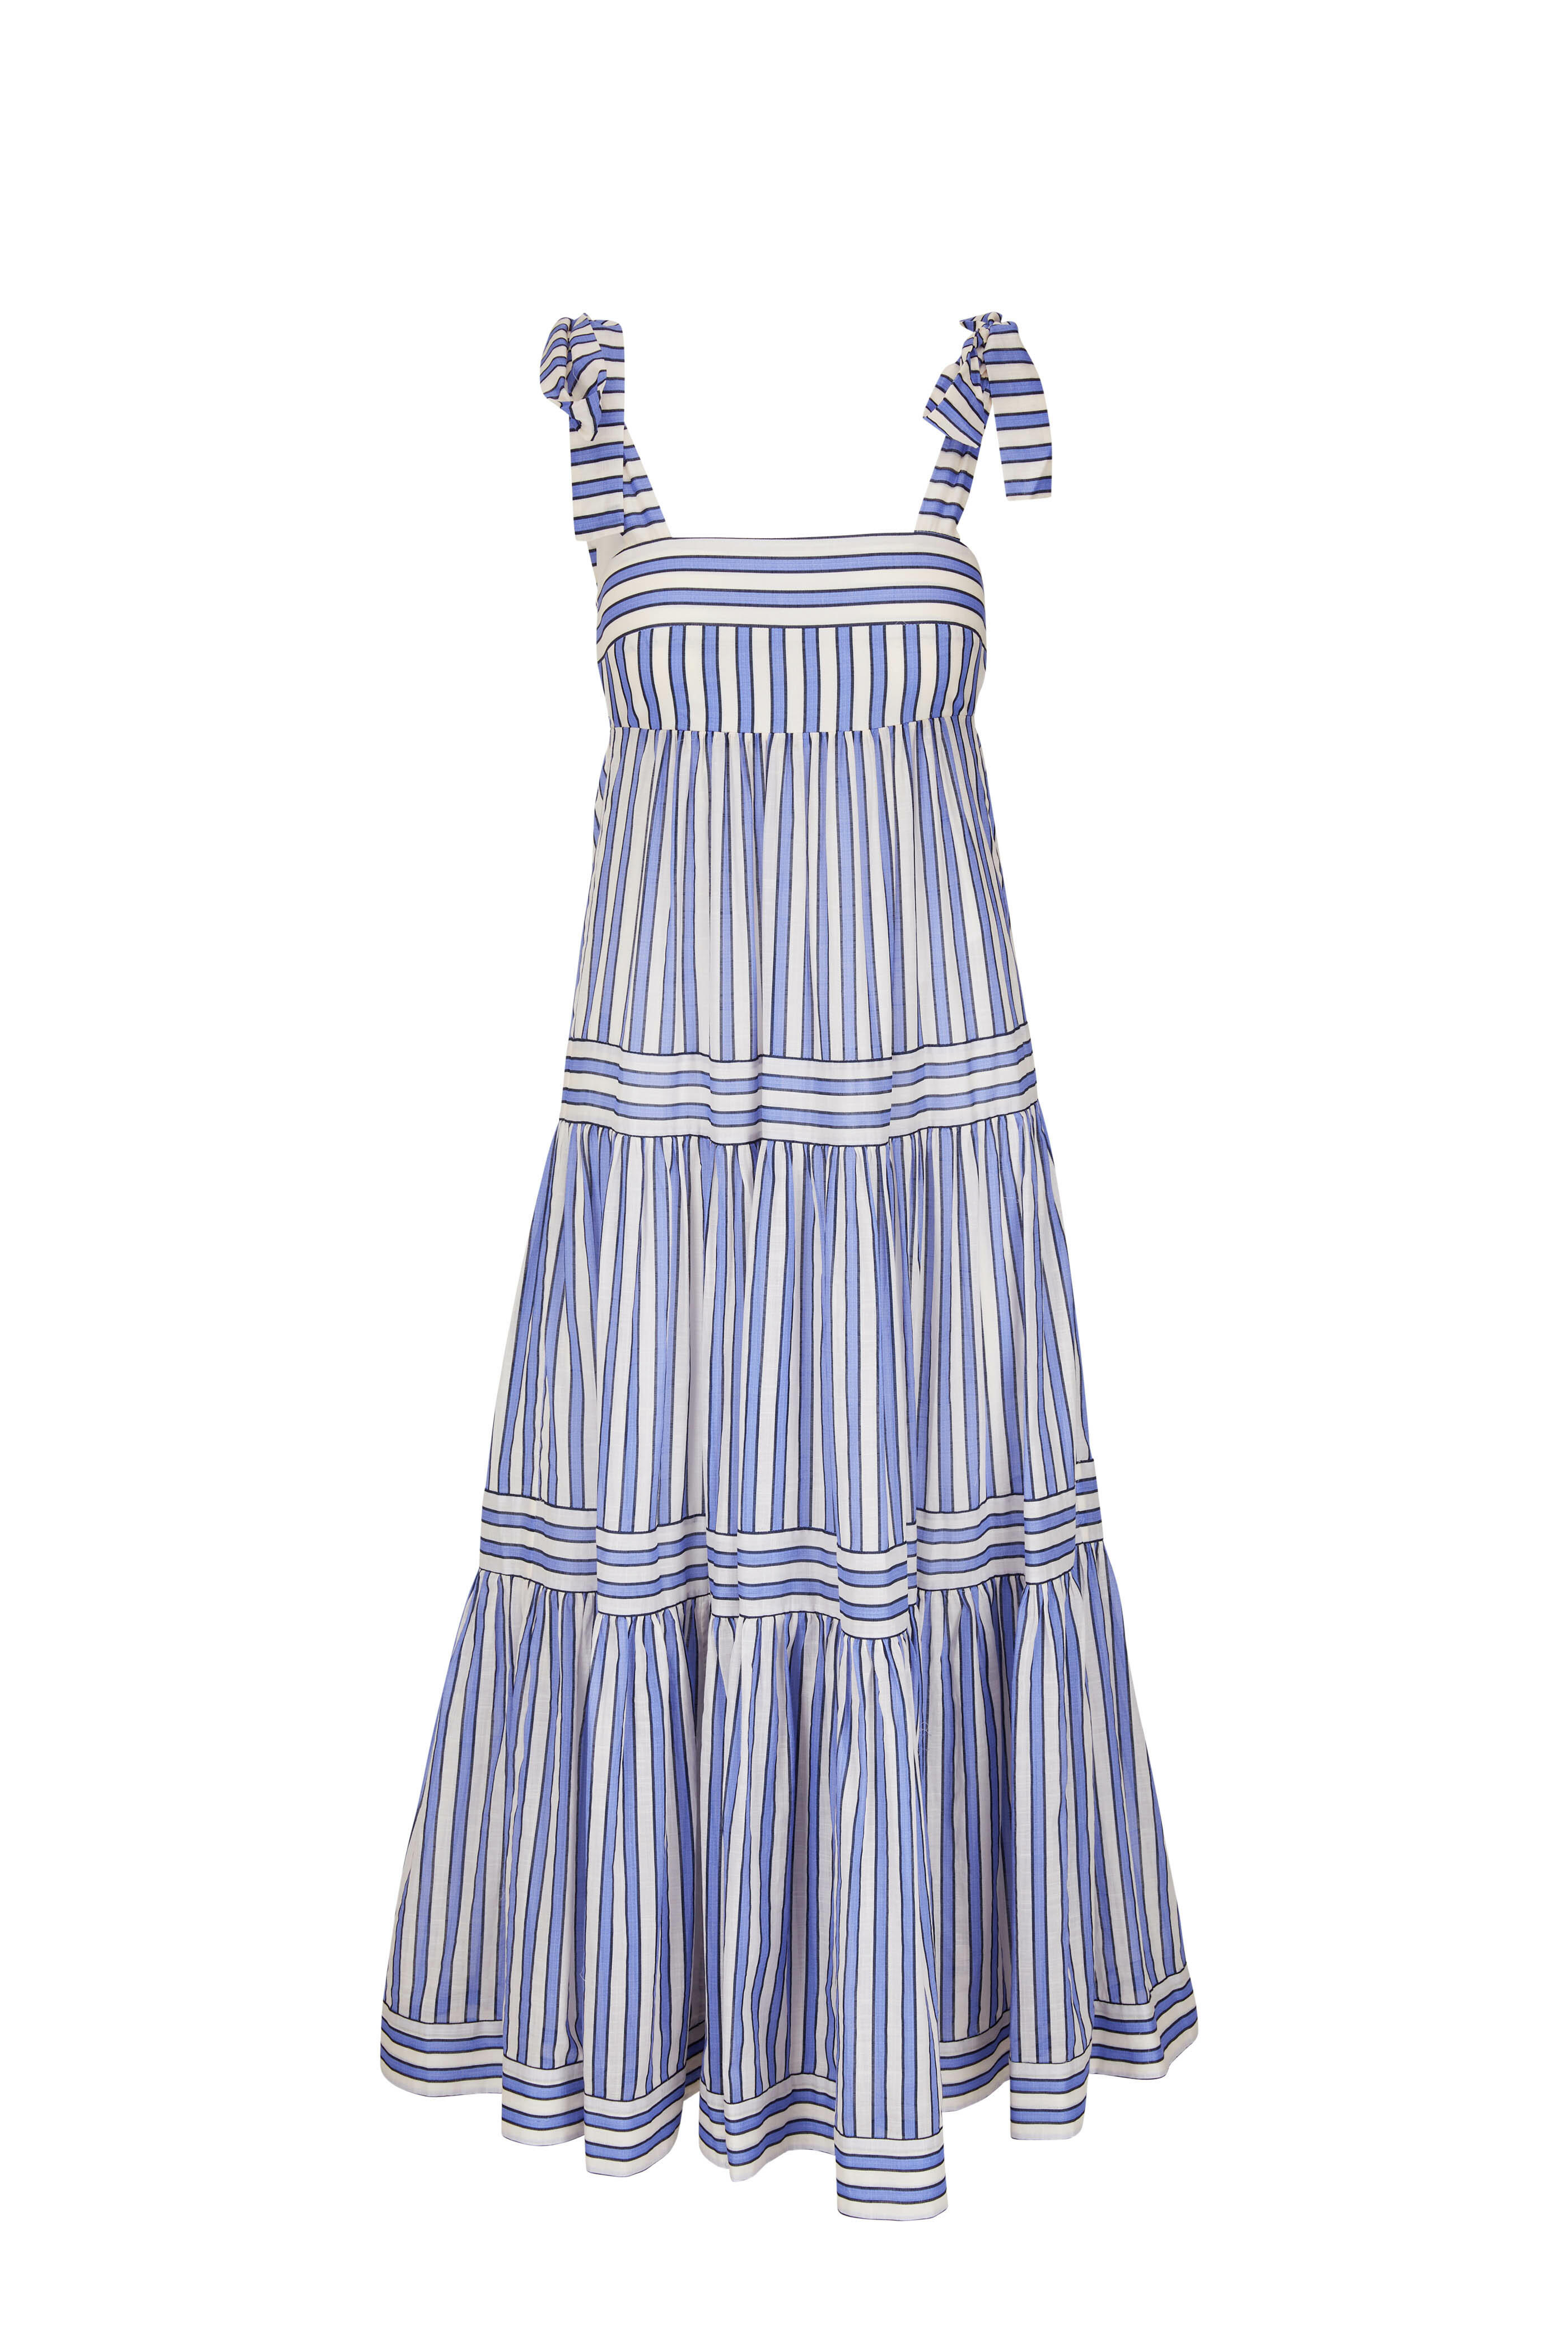 Zimmermann - Pattie Blue & White Stripe Tie Shoulder Dress